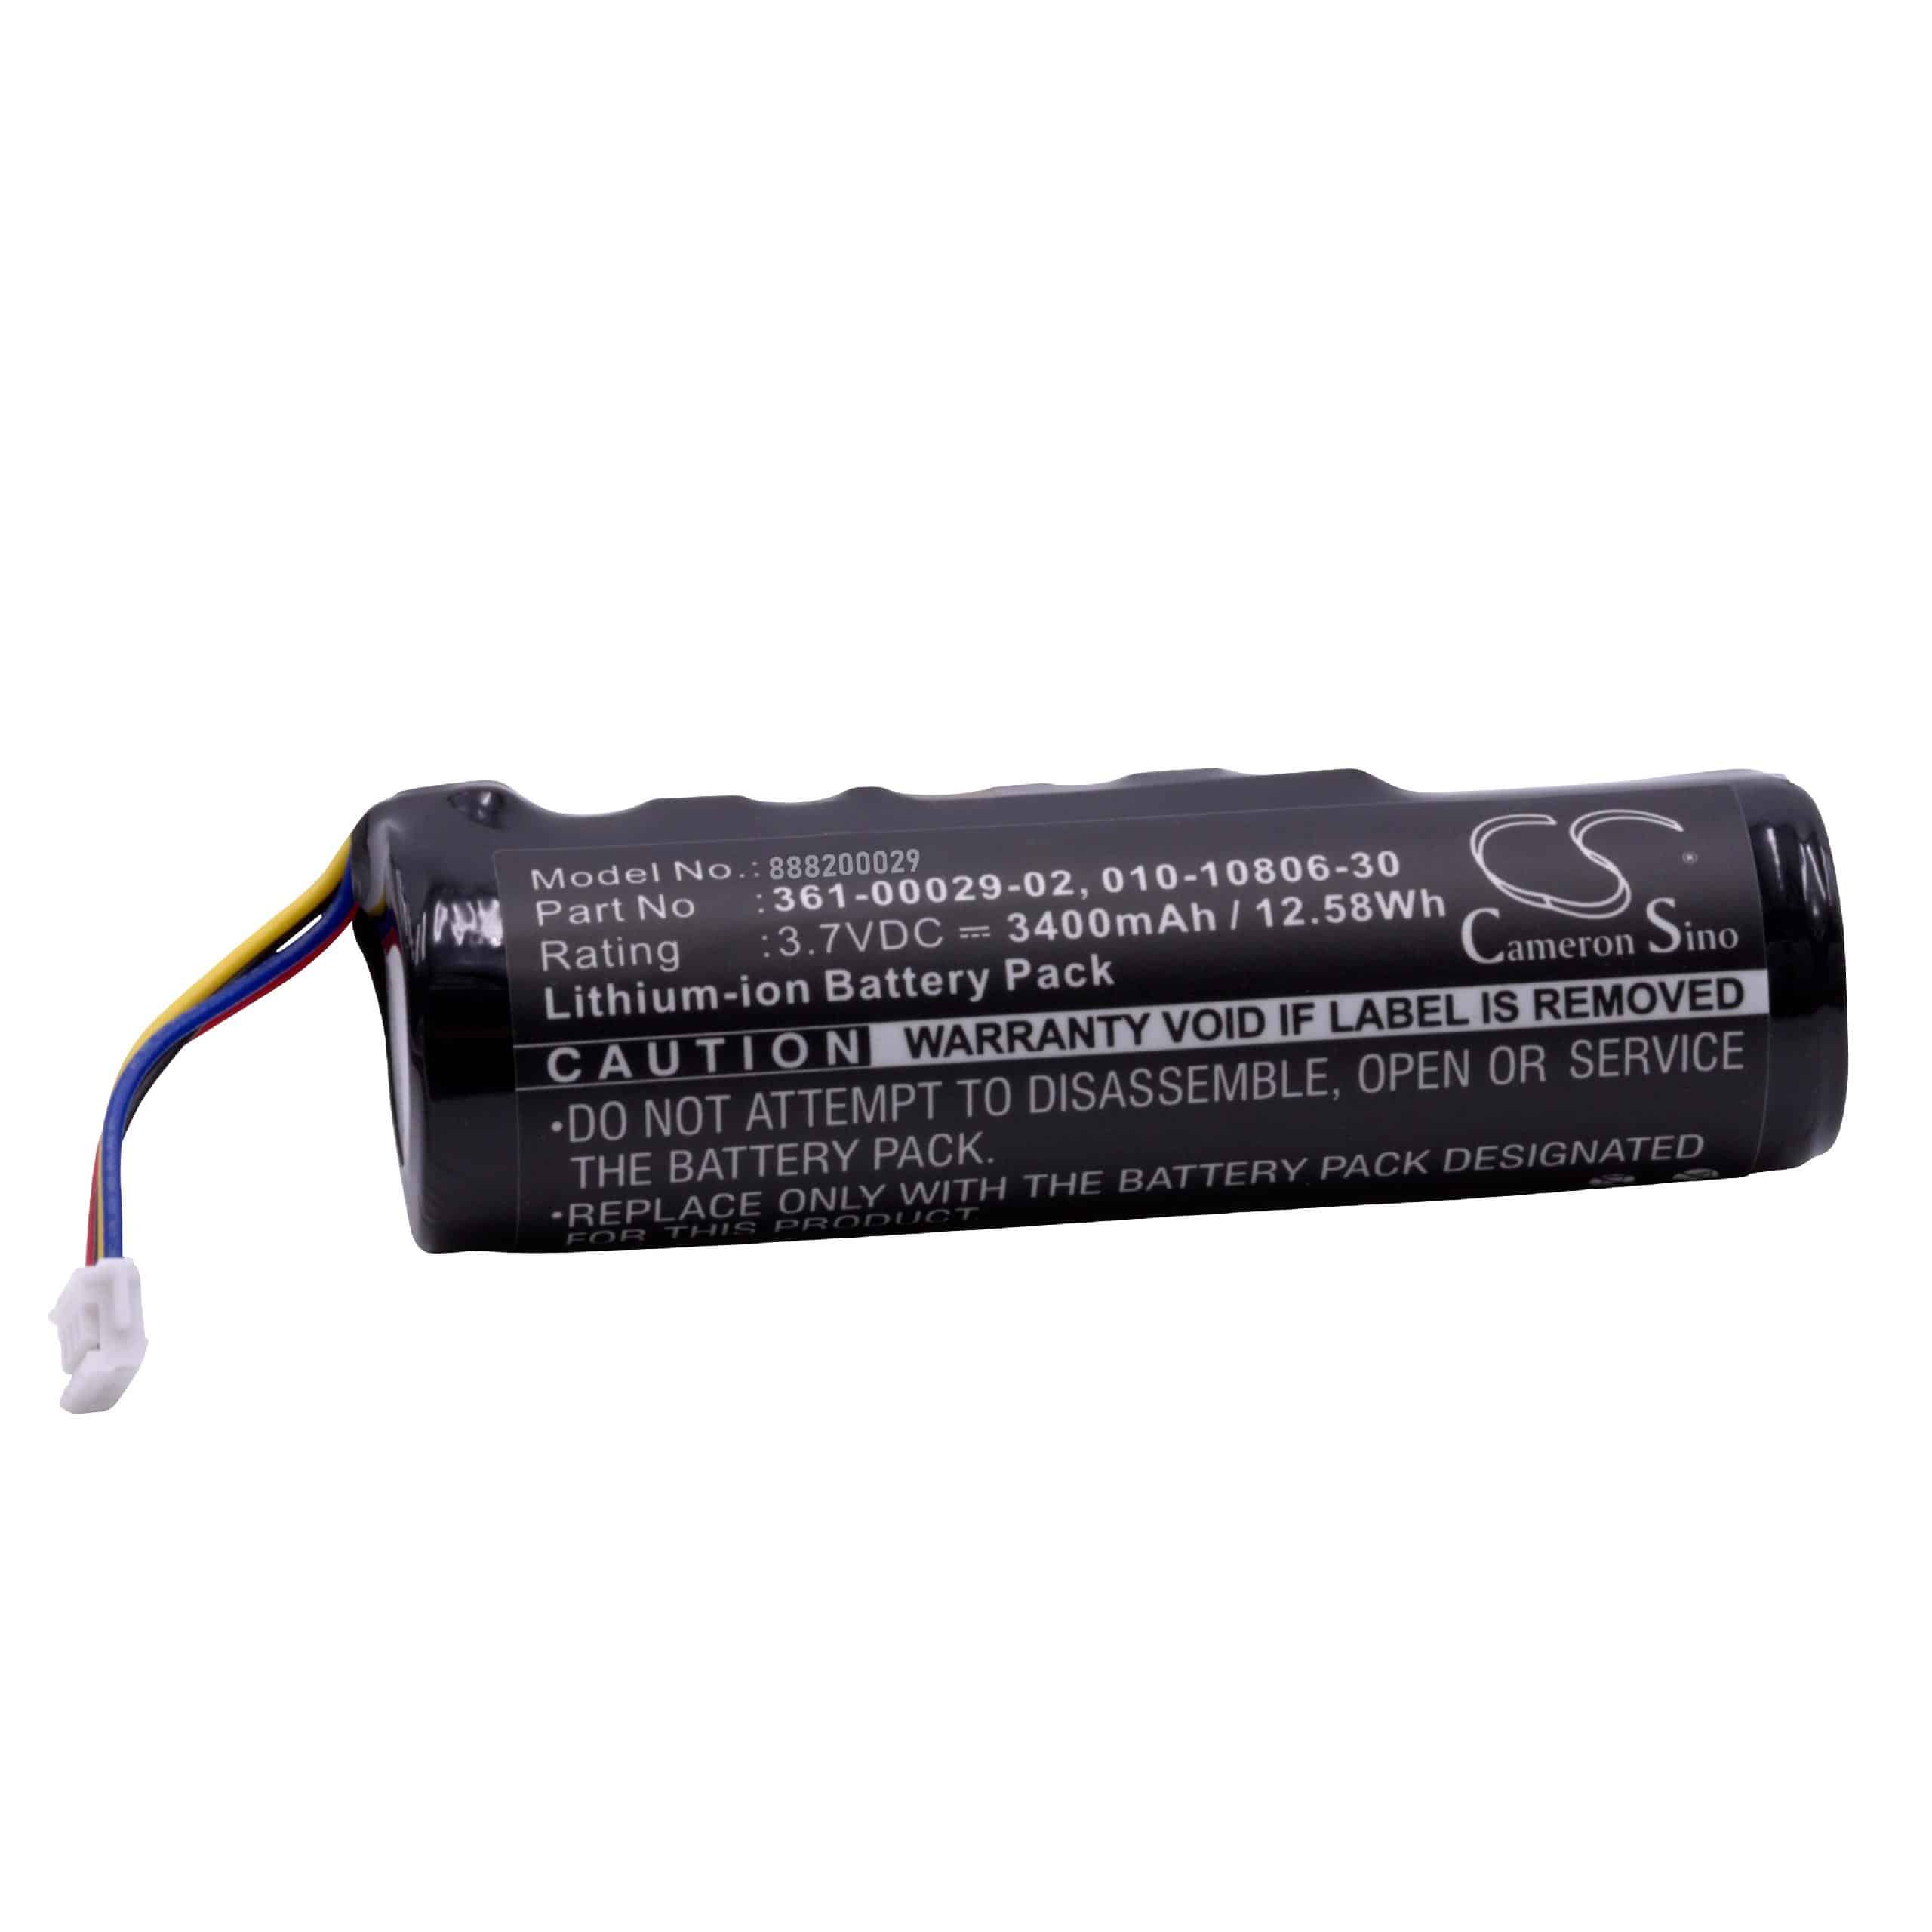 Batteria collare per collare per cani sostituisce Garmin 010-10806-30 Garmin - 3400mAh 3,7V Li-Ion